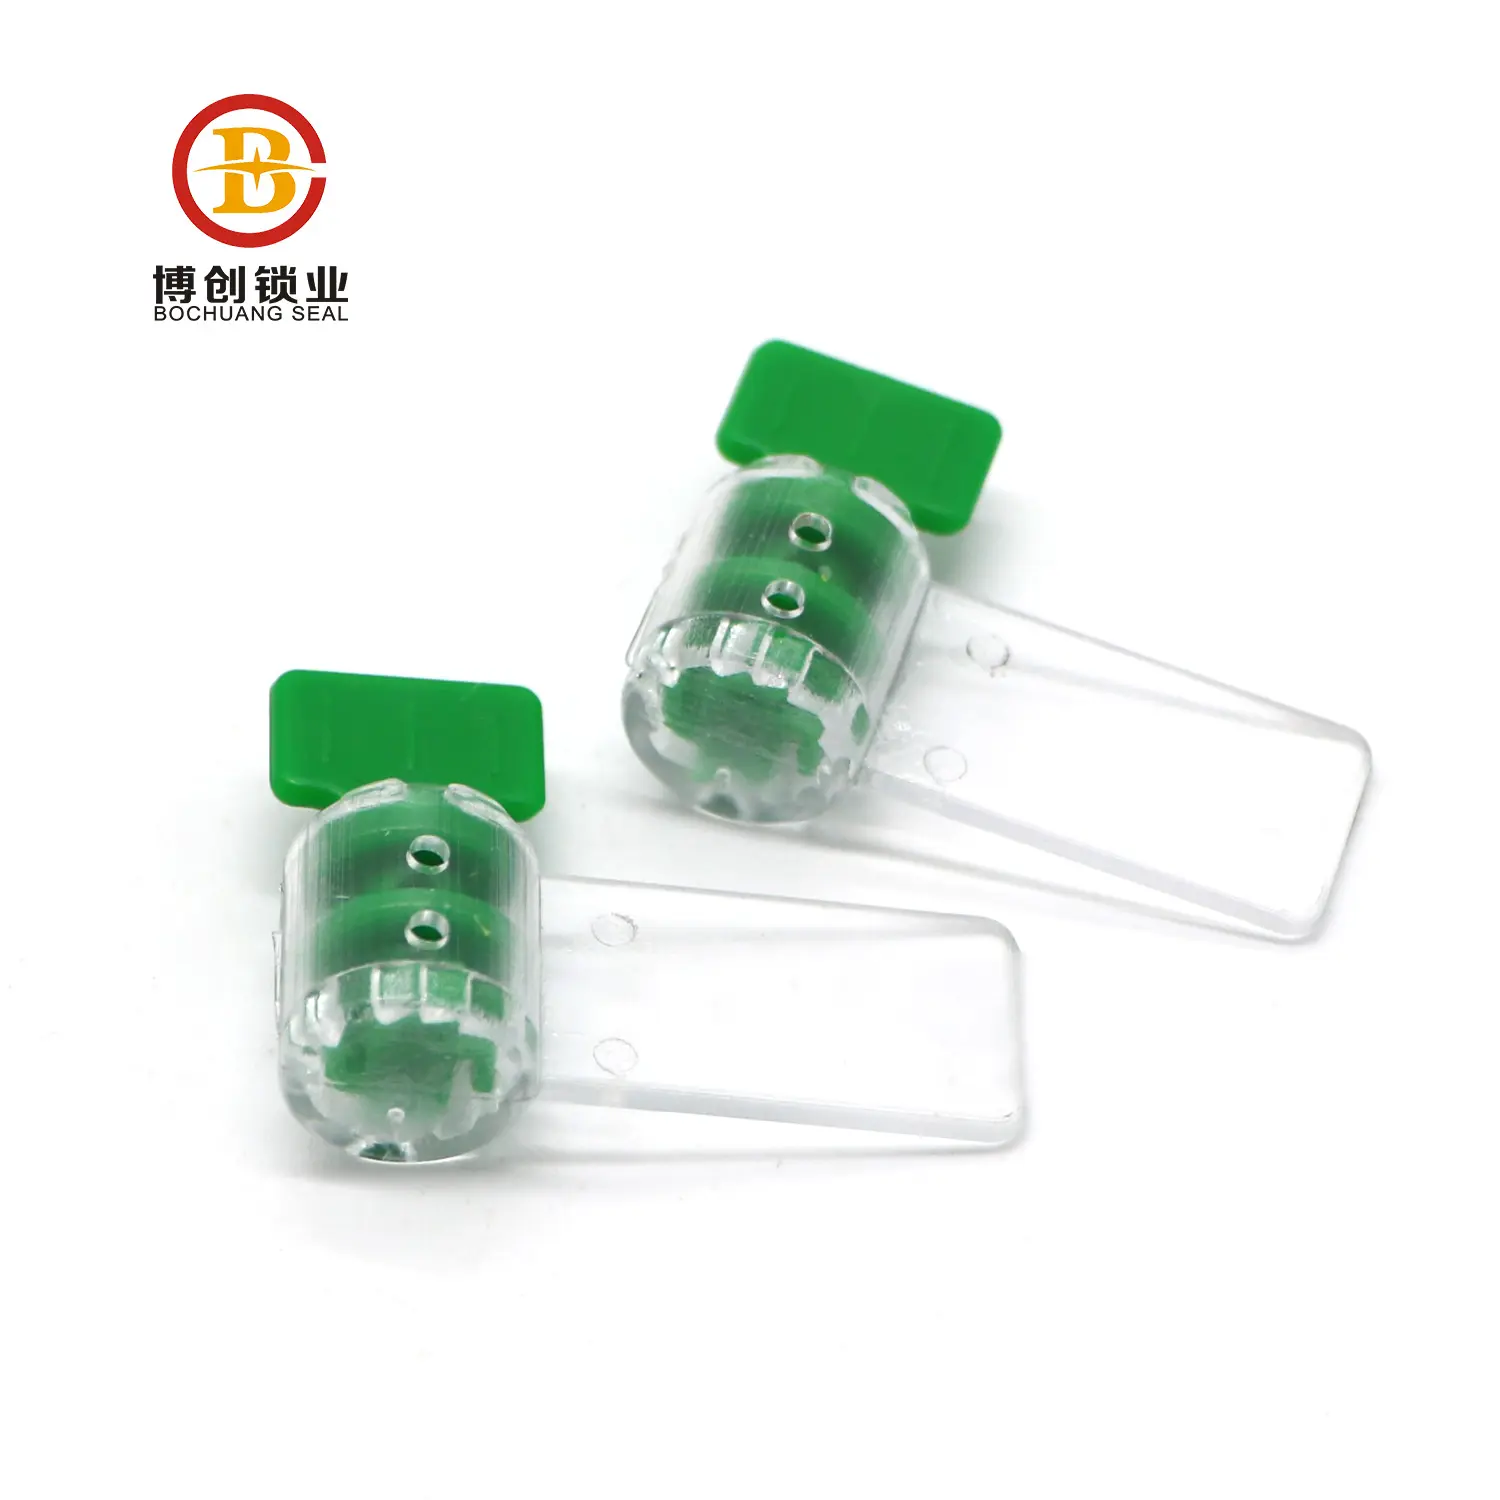 BCM104 elektrik sayacı bakır mühürler elektrik sayacı kutusu mühür güvenlik plastik asma kilit mühürler ölçüm logo ile